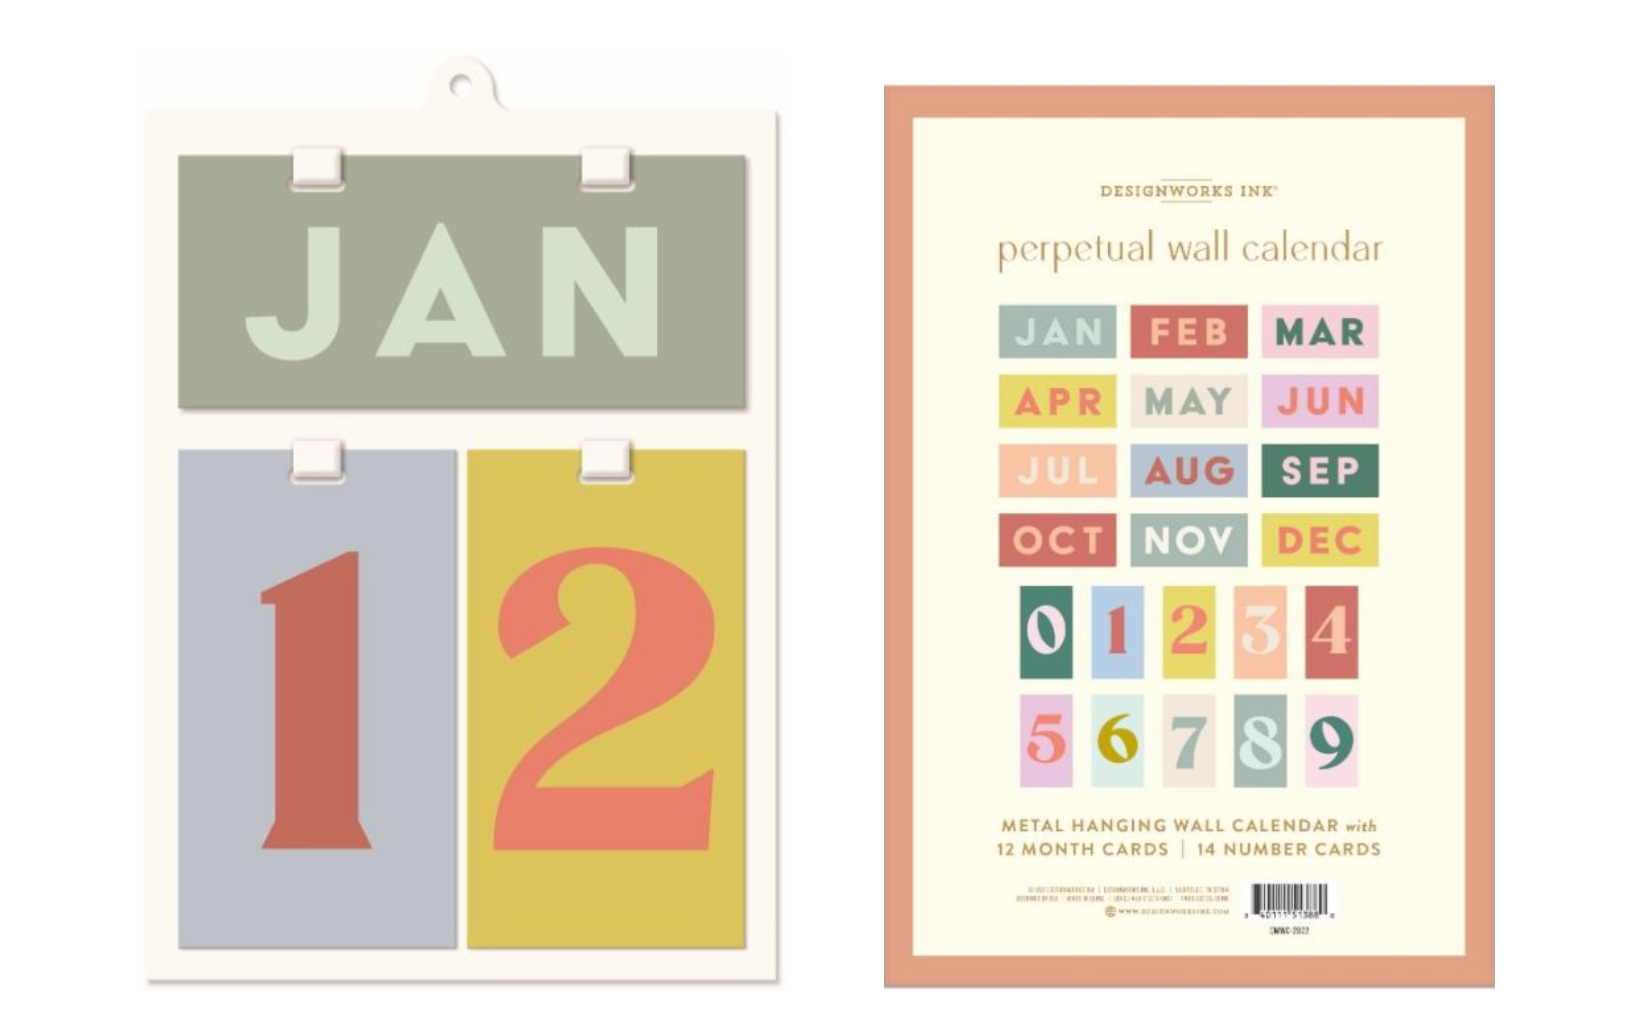 Perpetual Wall Calendar by Designworks Ink